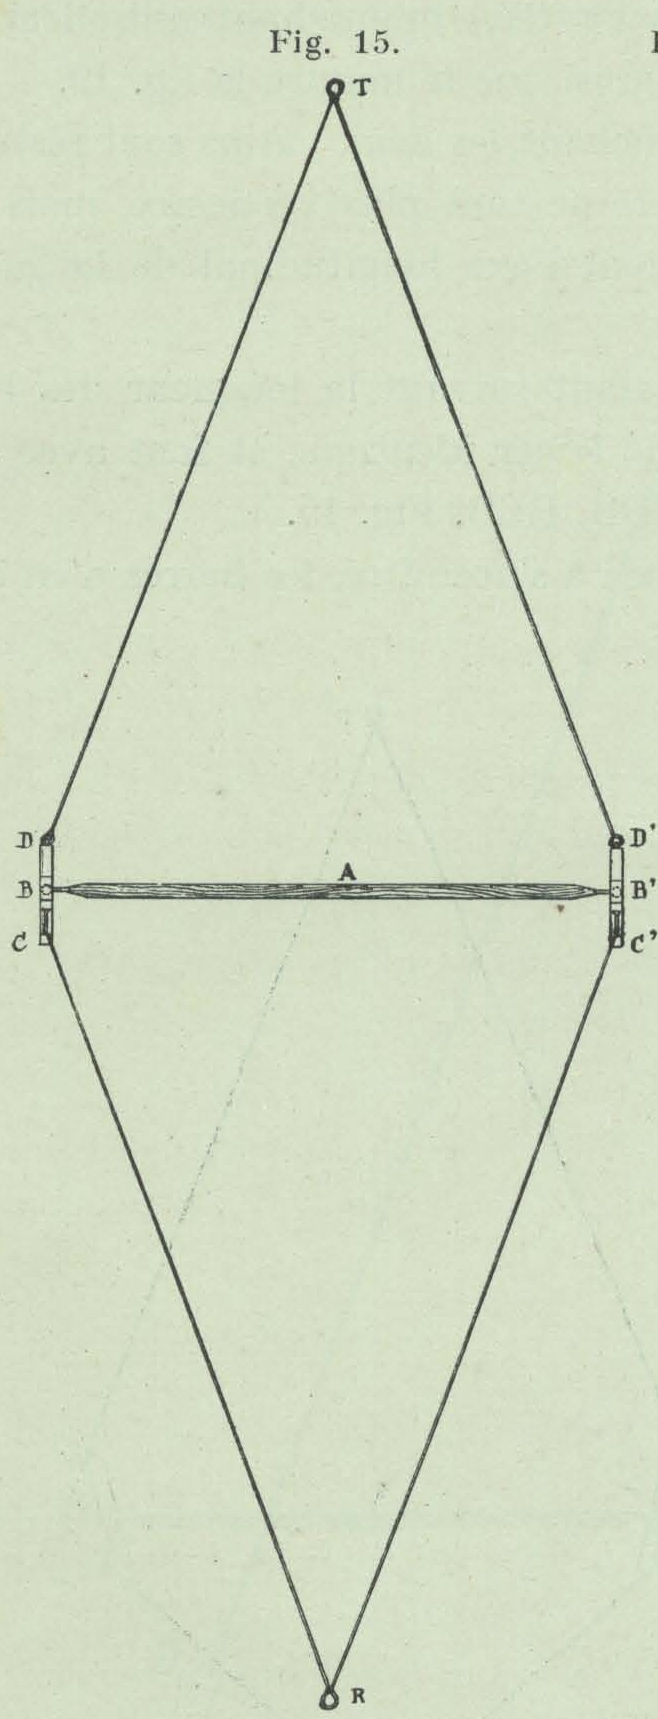 Gilson (1911, fig. 15)